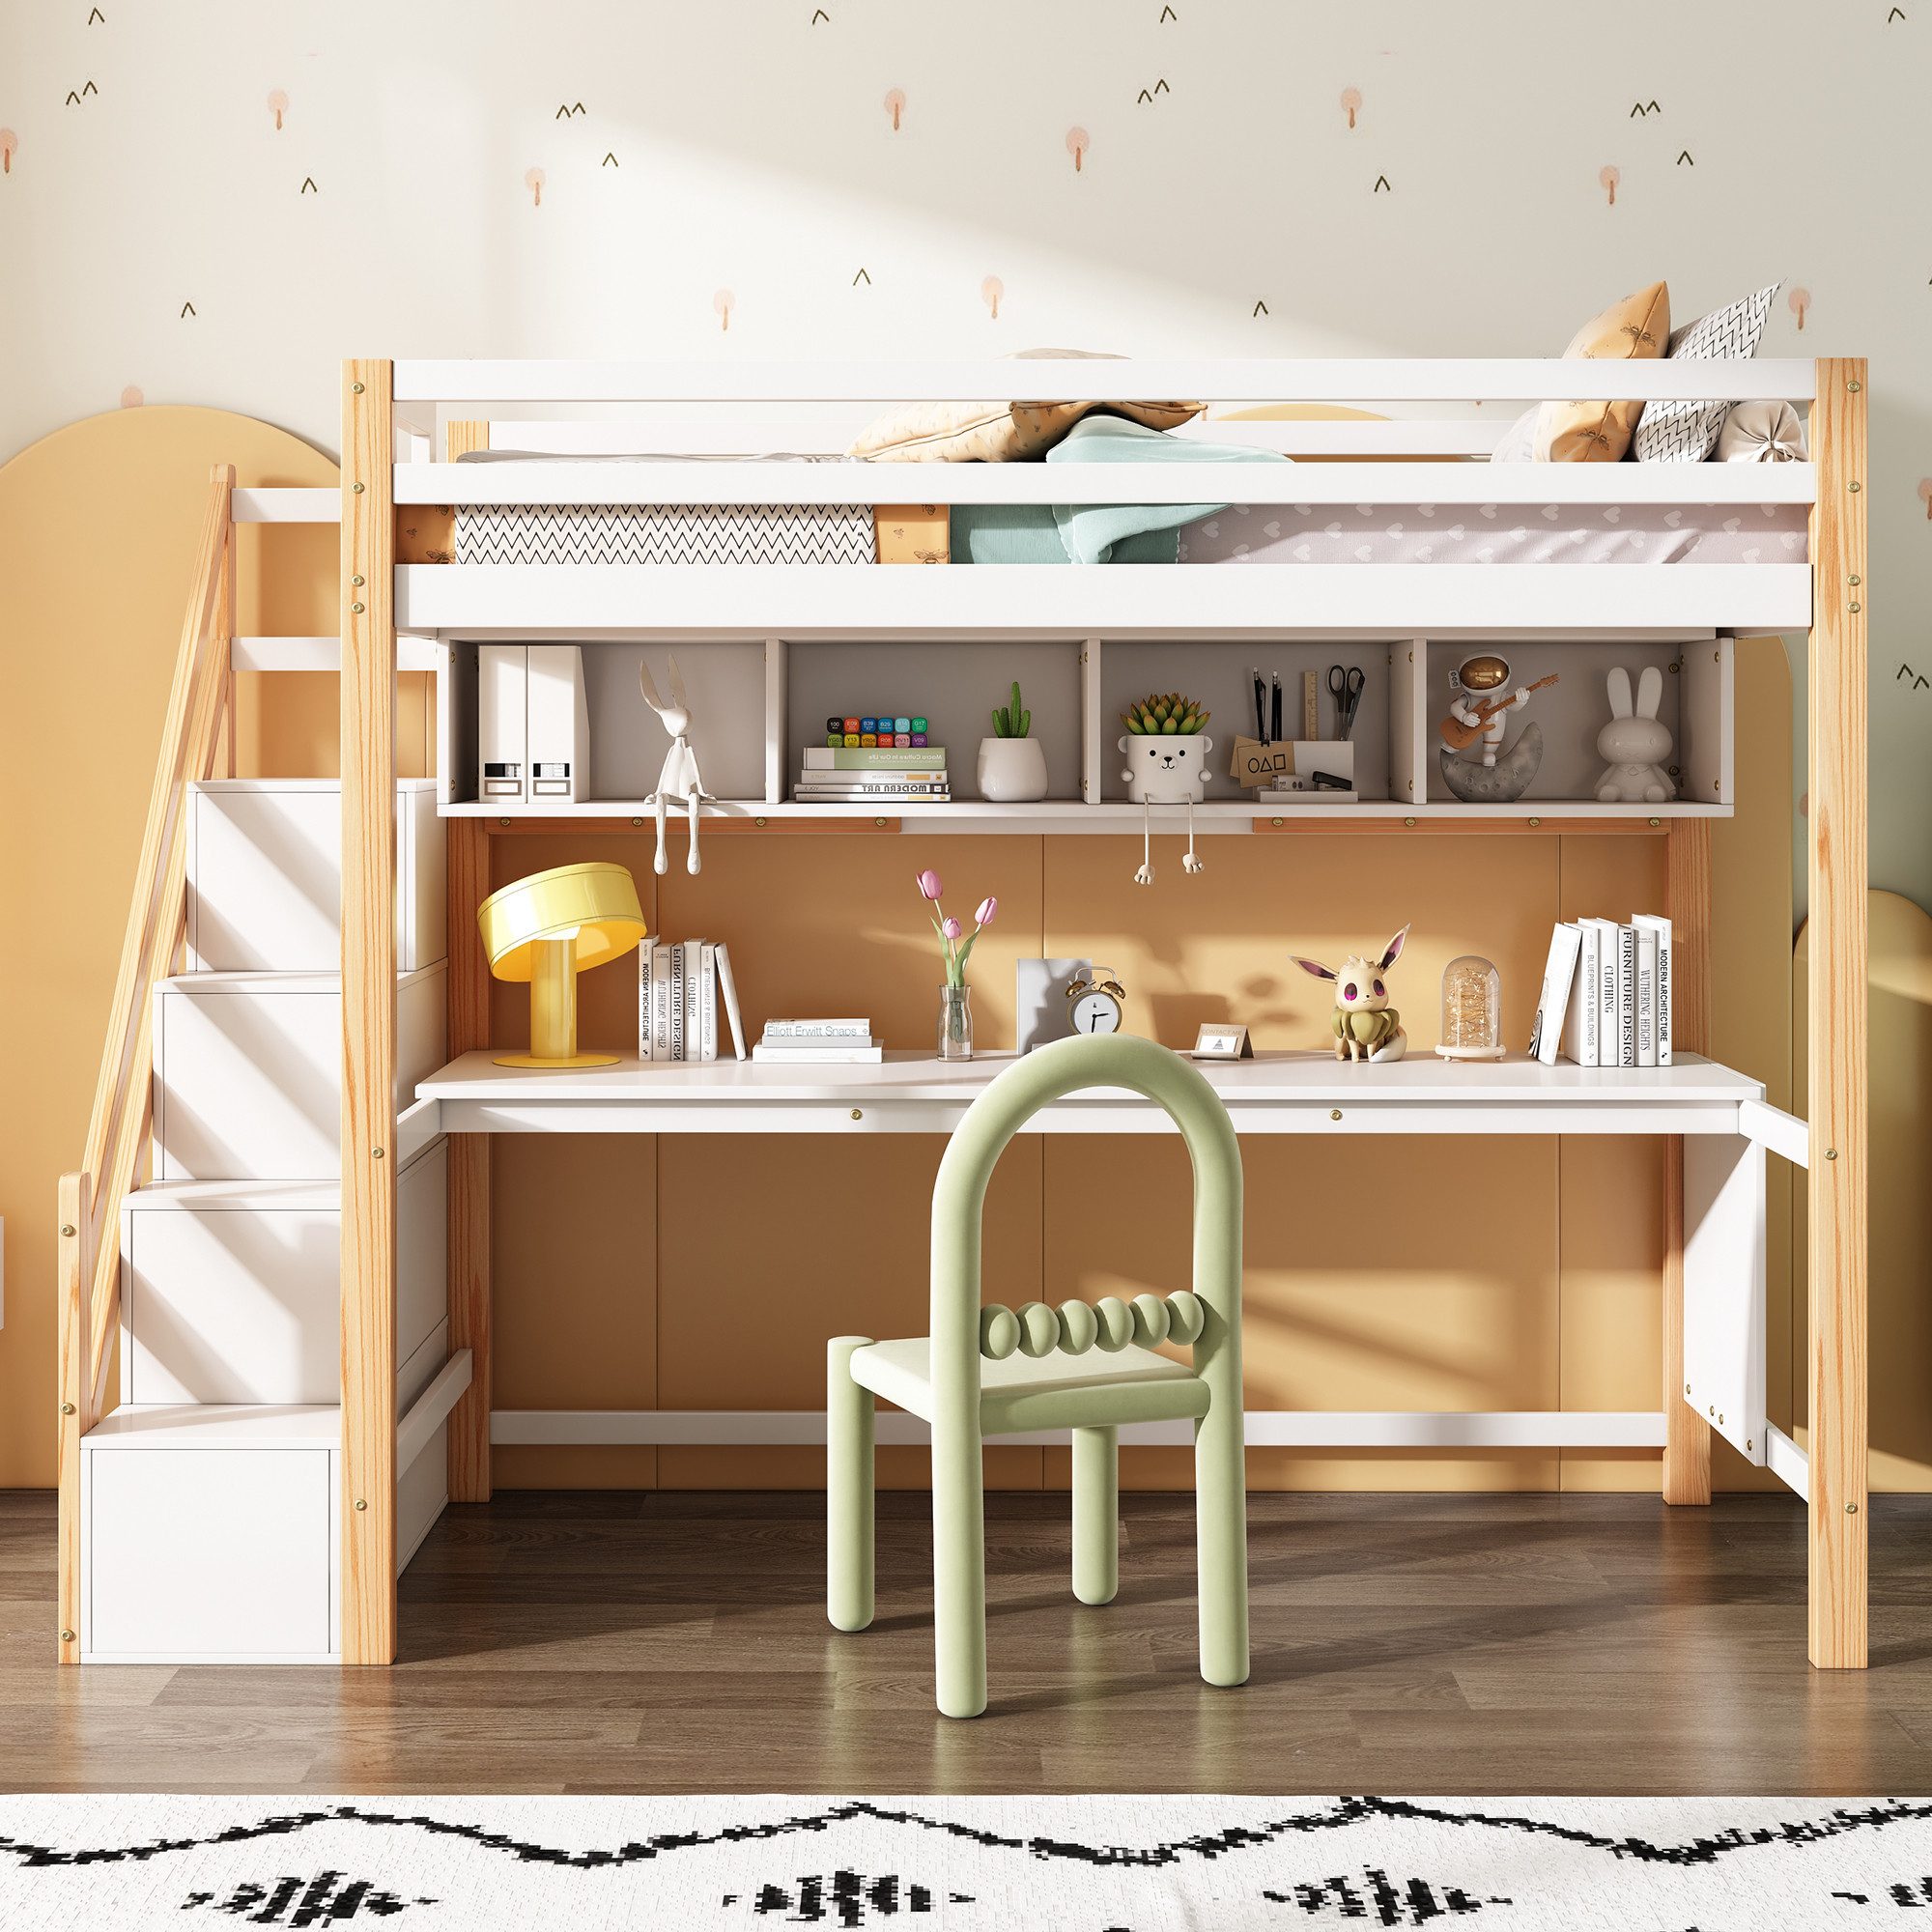 XDeer Kinderbett Etagenbett mit Stauraumtreppe 90*200cm, aus Kiefernholz, mit großen Schreibtisch und Regalen, natürlich und weiß